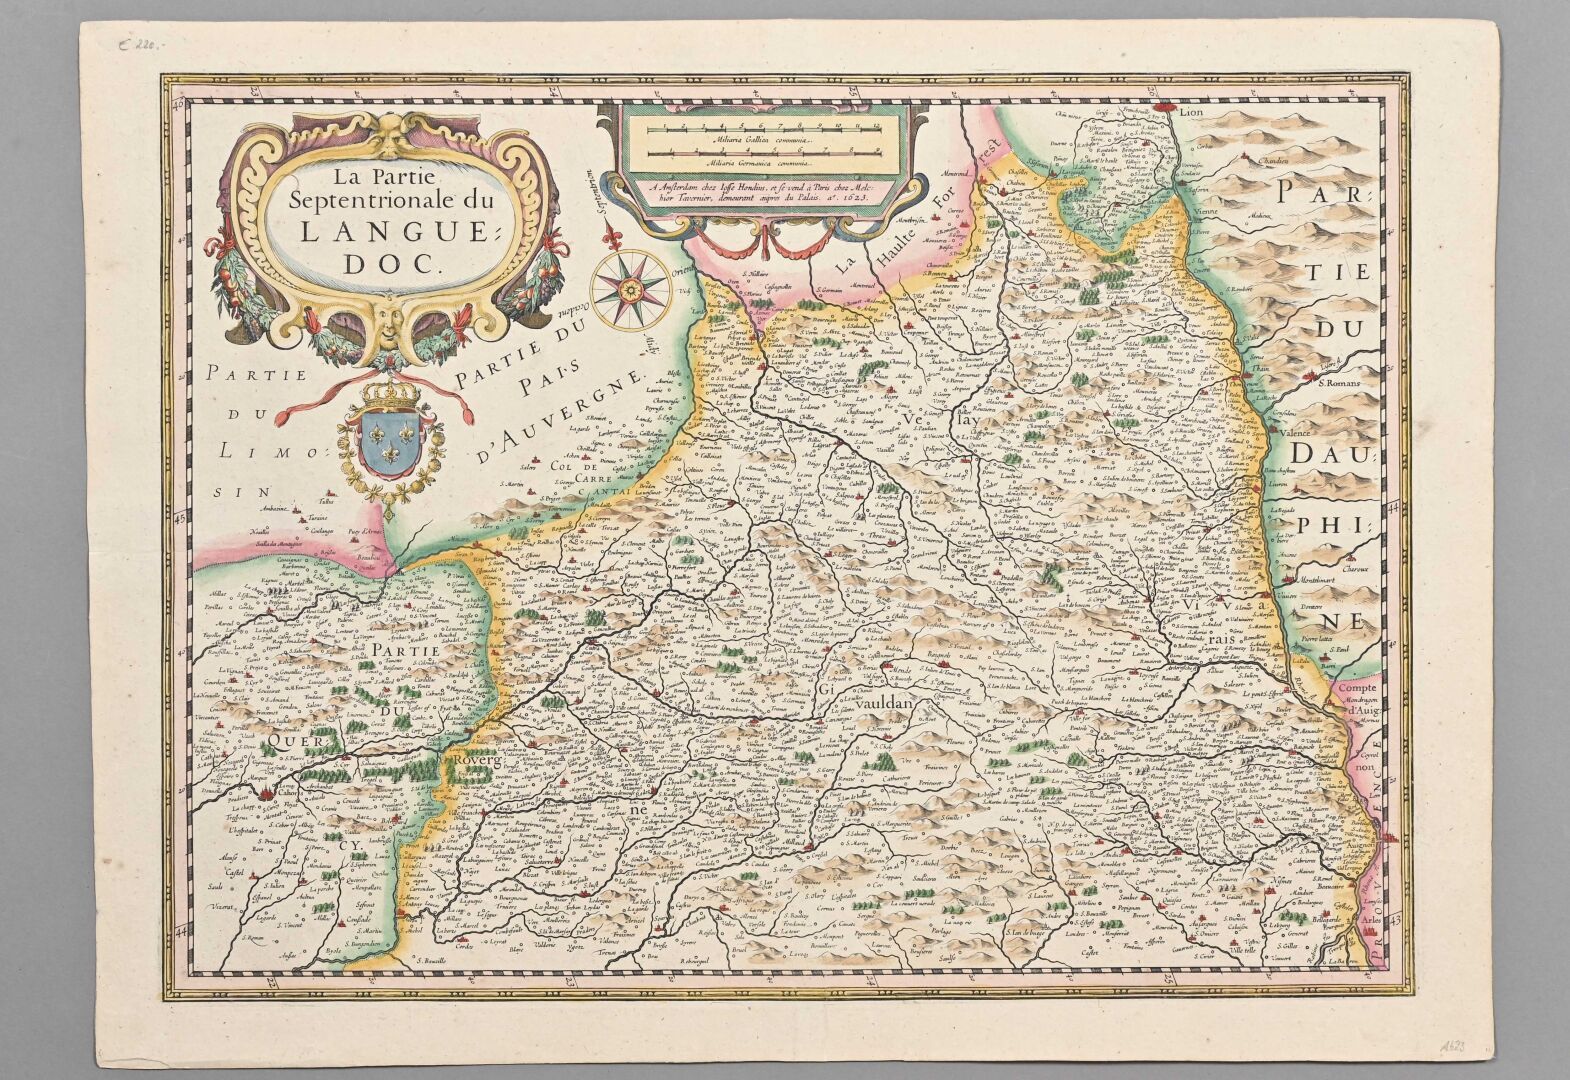 Null Johannes BLAEU (1650-1712)

Karte des nördlichen Teils des Languedoc.

Mode&hellip;